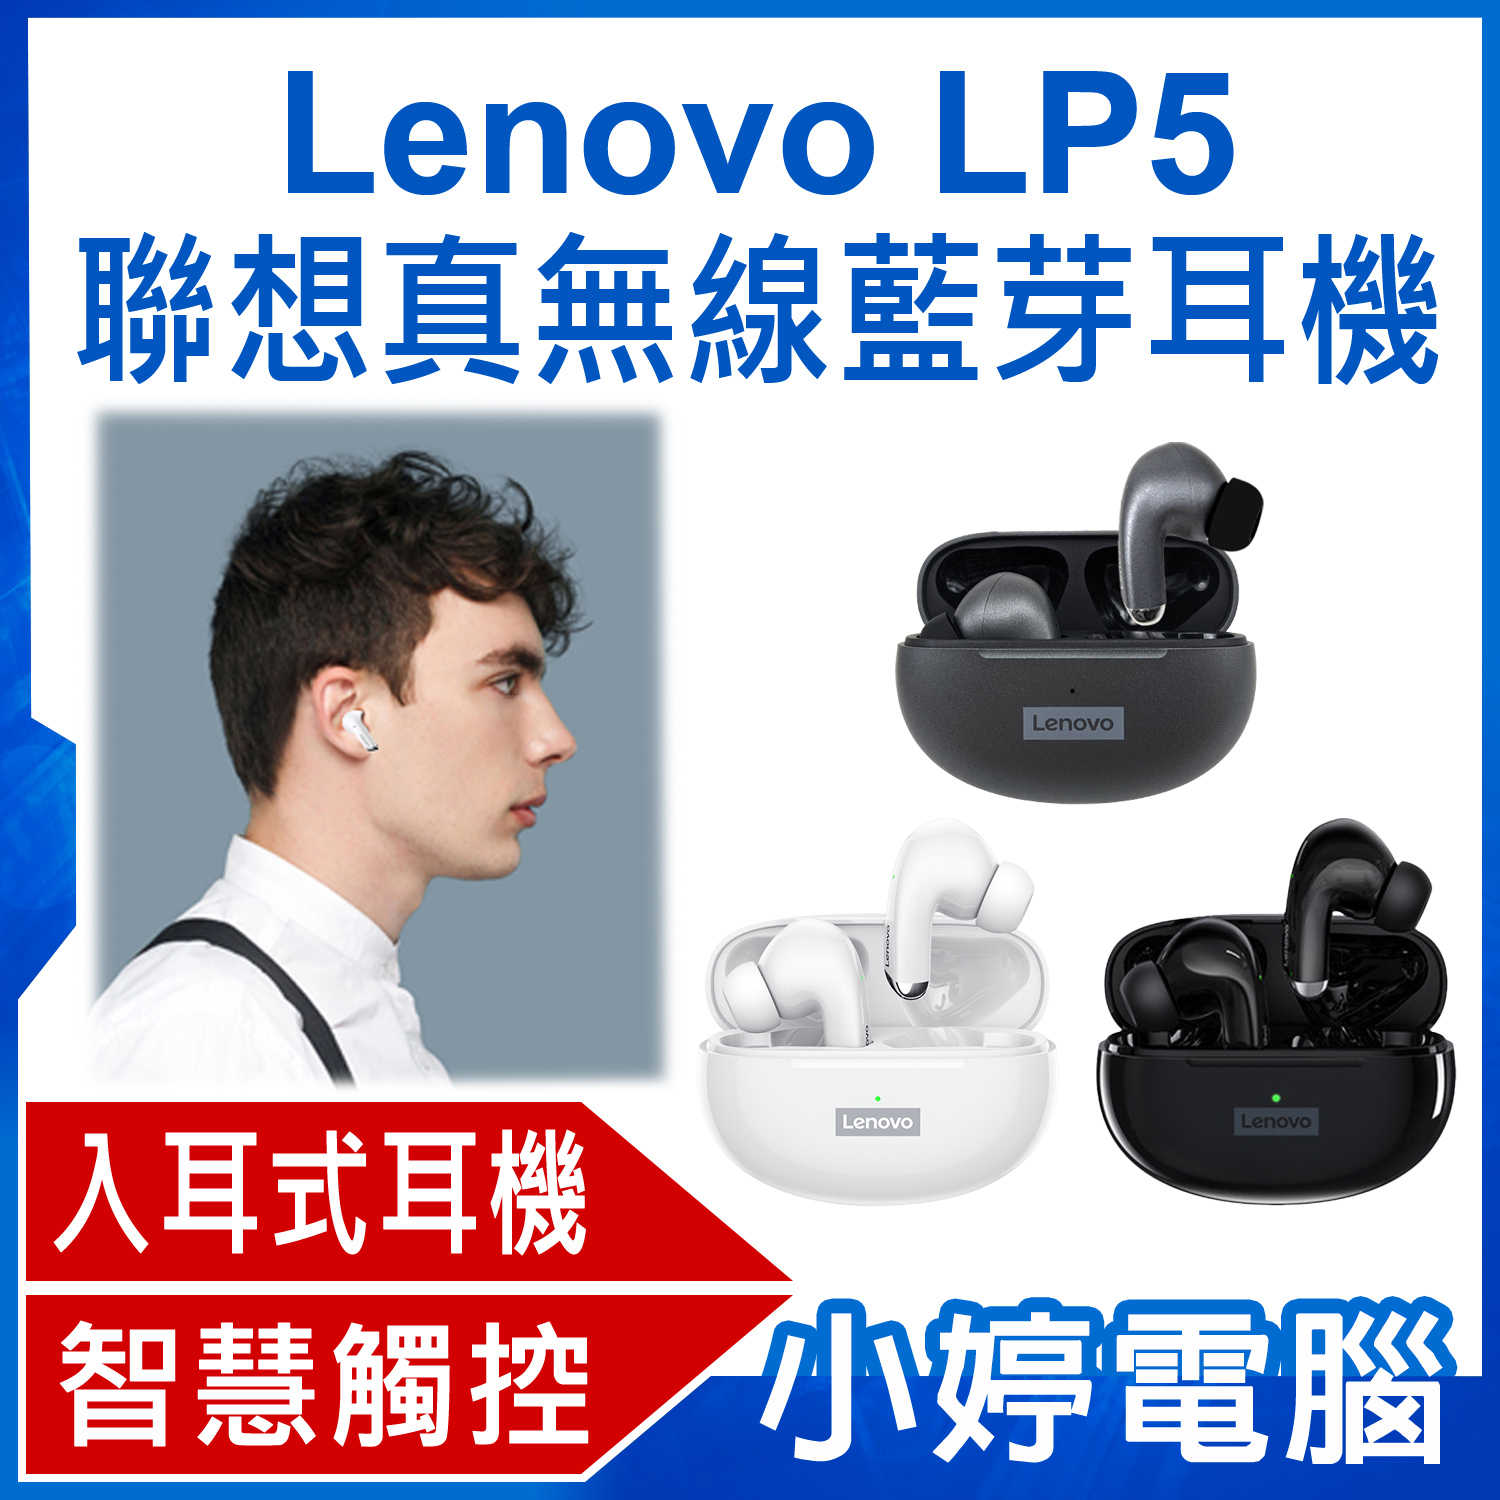 【小婷電腦】Lenovo LP5 聯想真無線藍芽耳機 入耳式耳機 HIFI音質 智慧觸控 輕量便攜